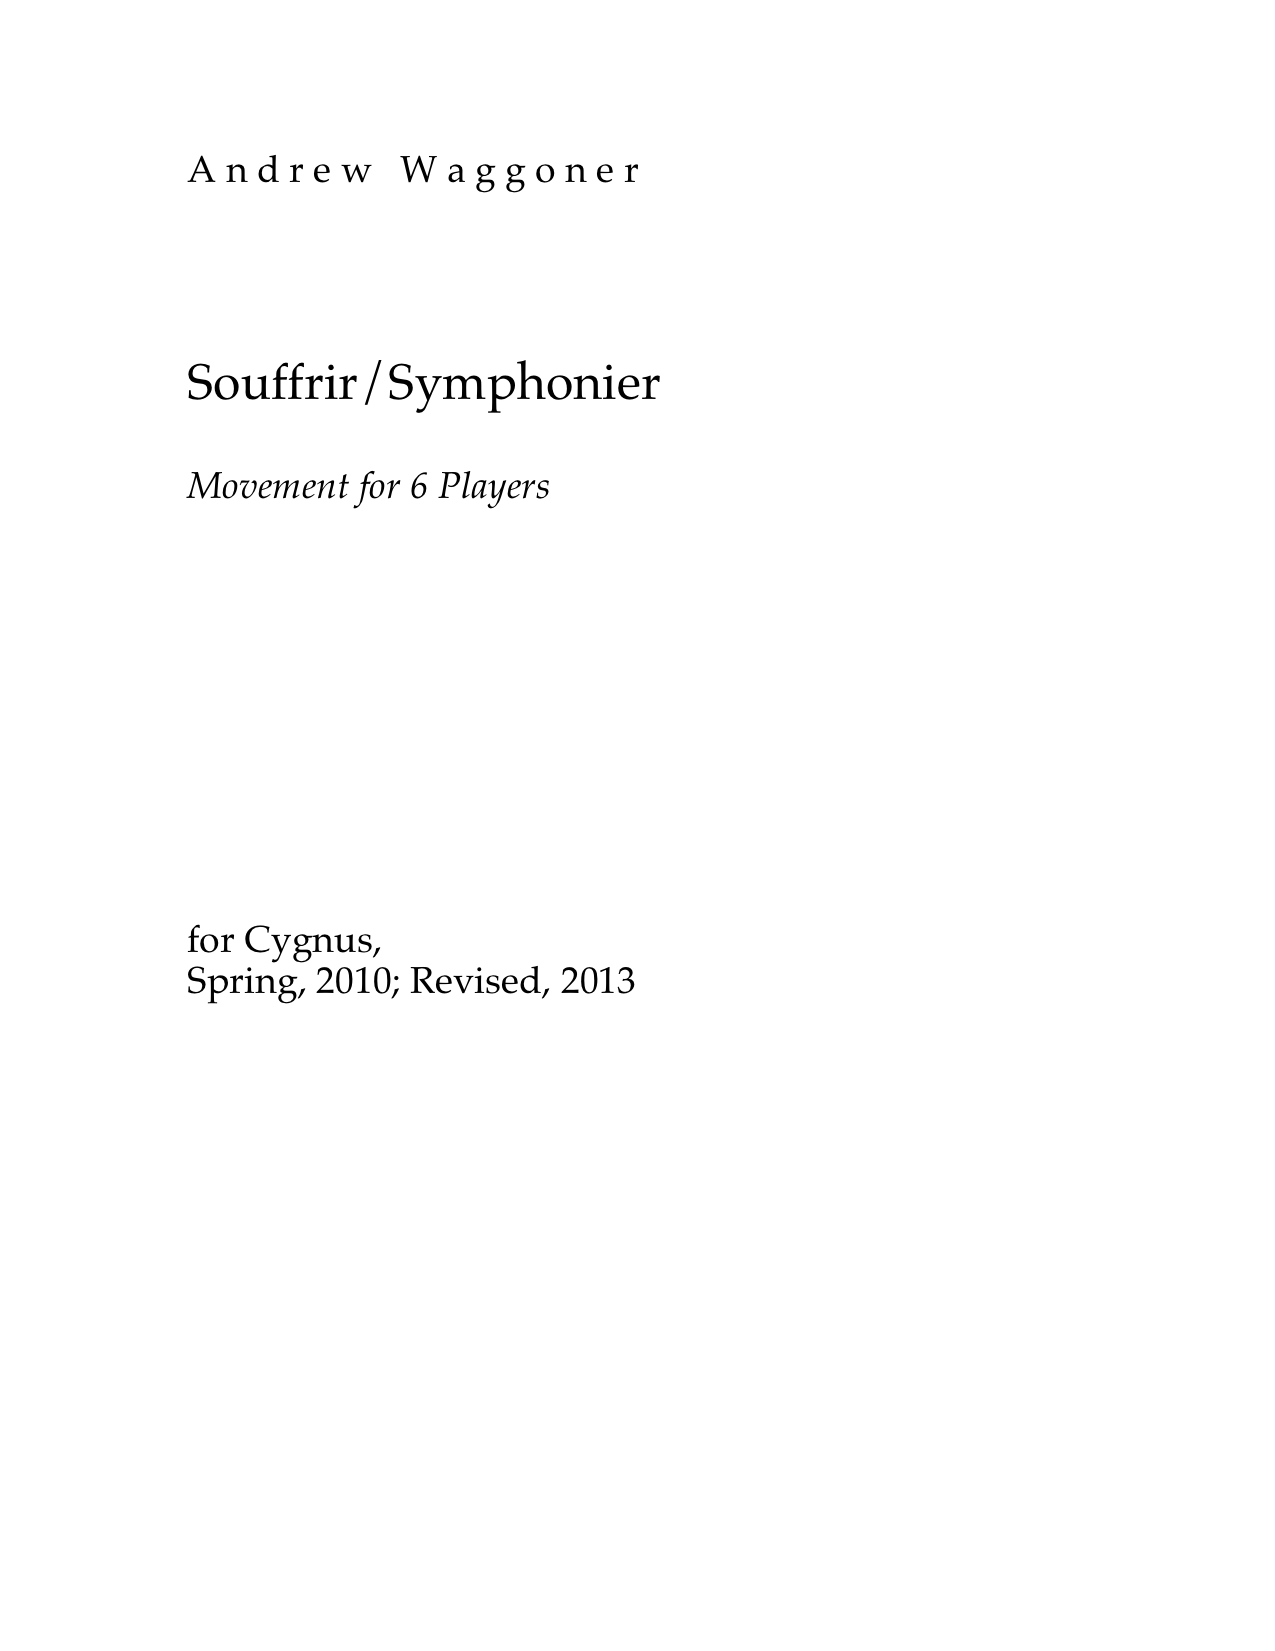 Souffrir / Symphonier Movement for 7 Players